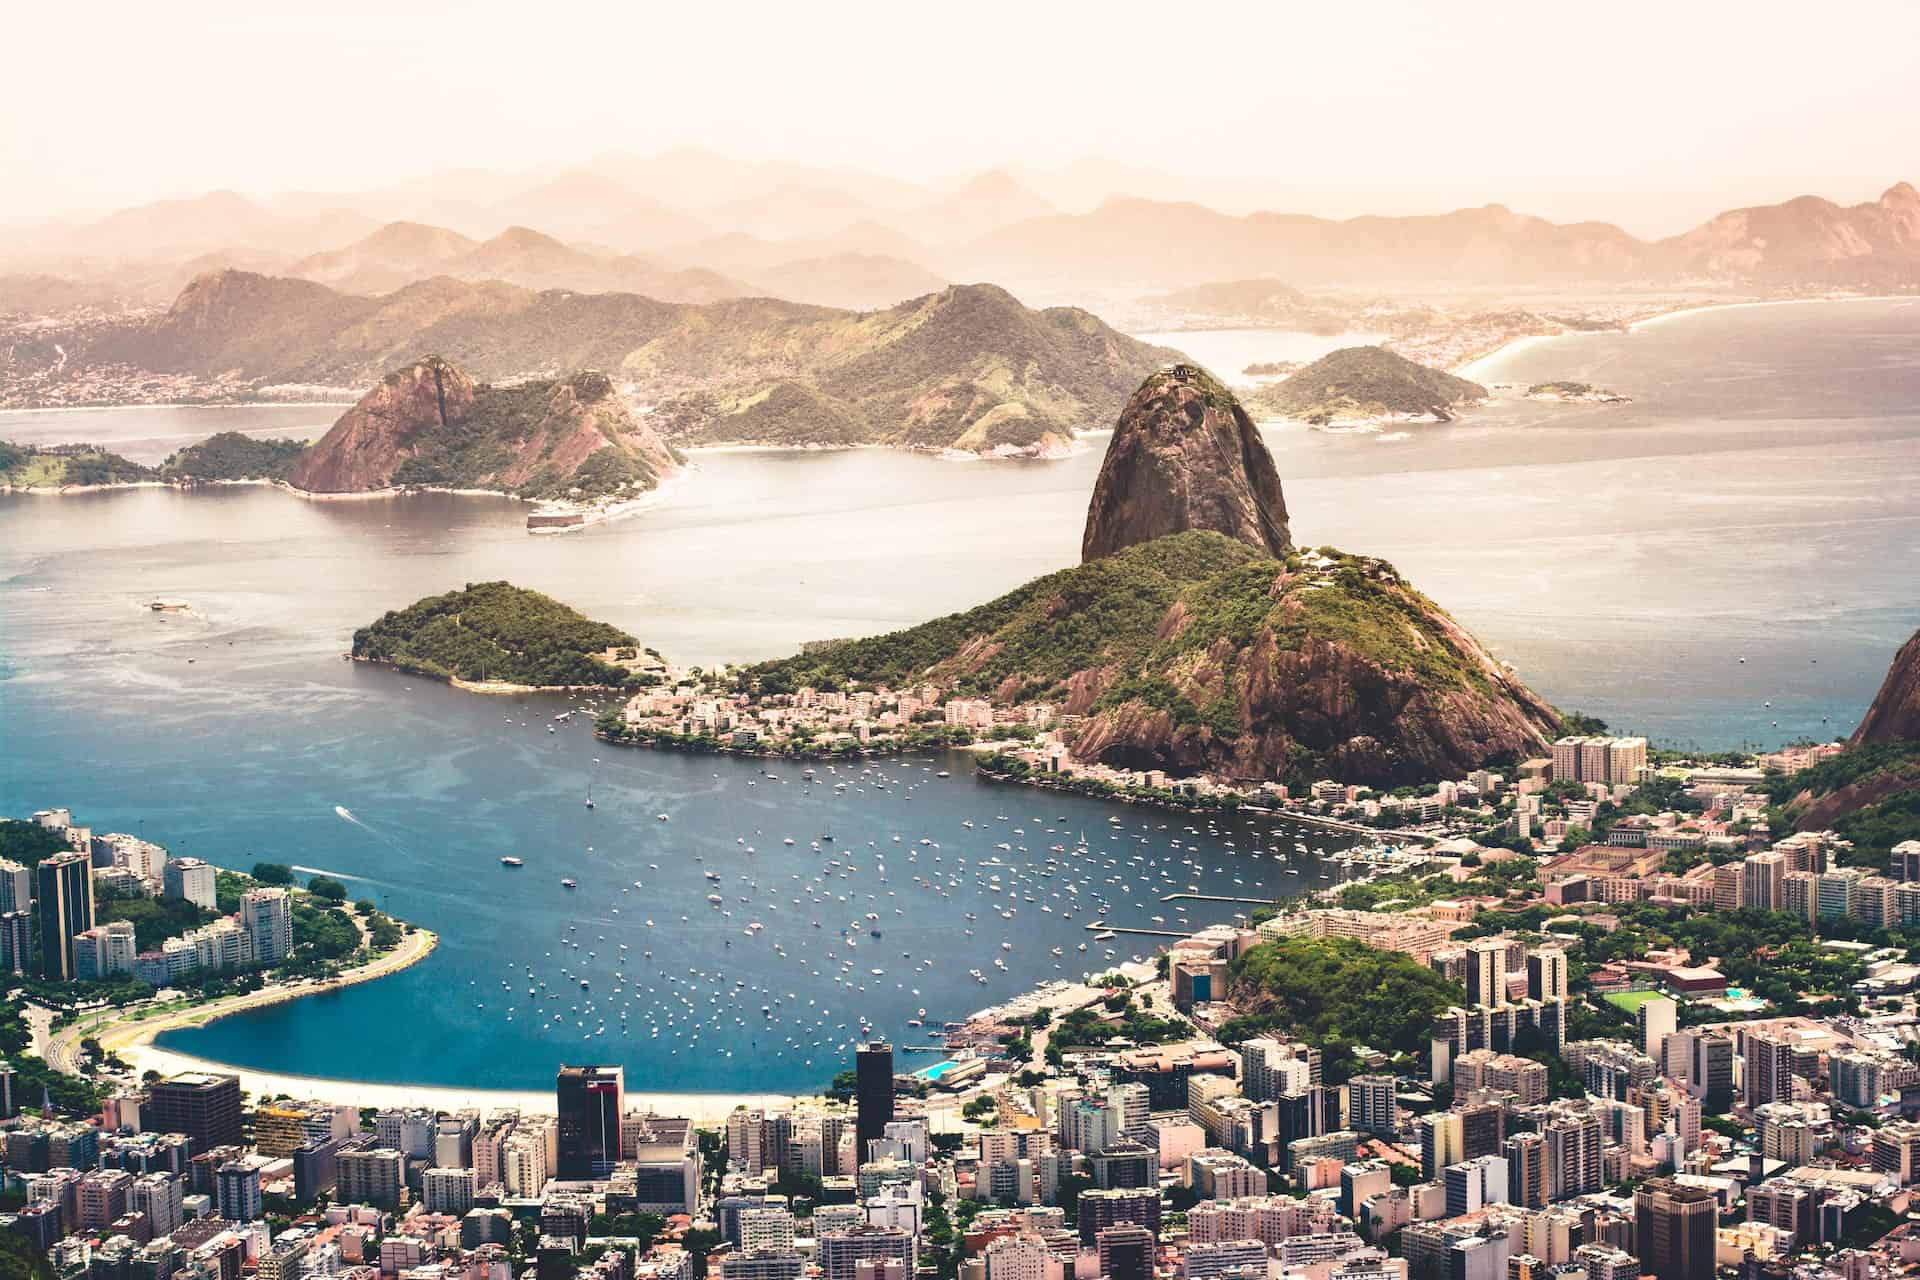 Brazil travel tips including visiting Rio de Janeiro
